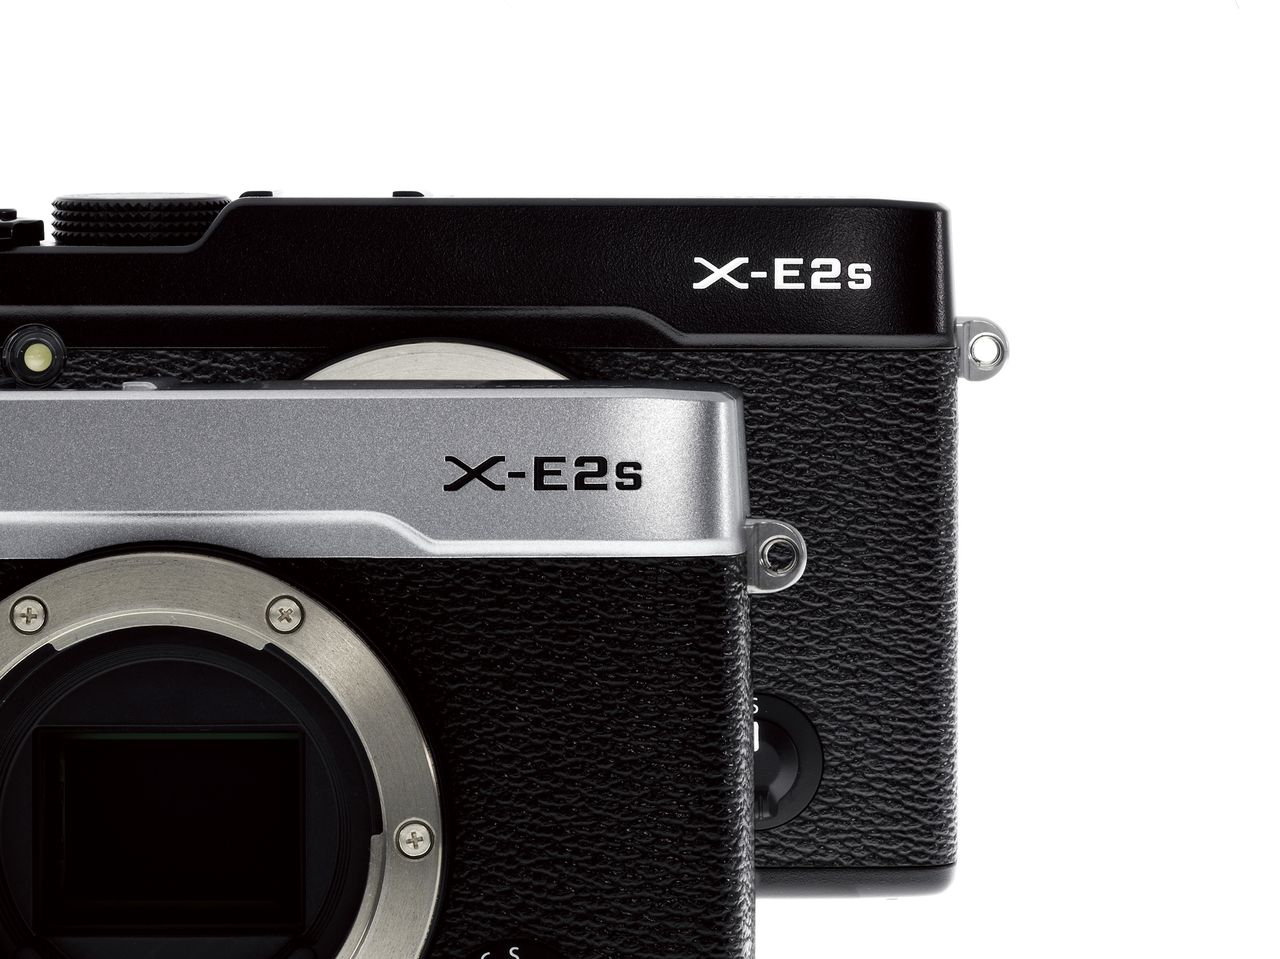 Fujifilm X-E2S - bezlusterkowiec odświeżony przez nowy firmware